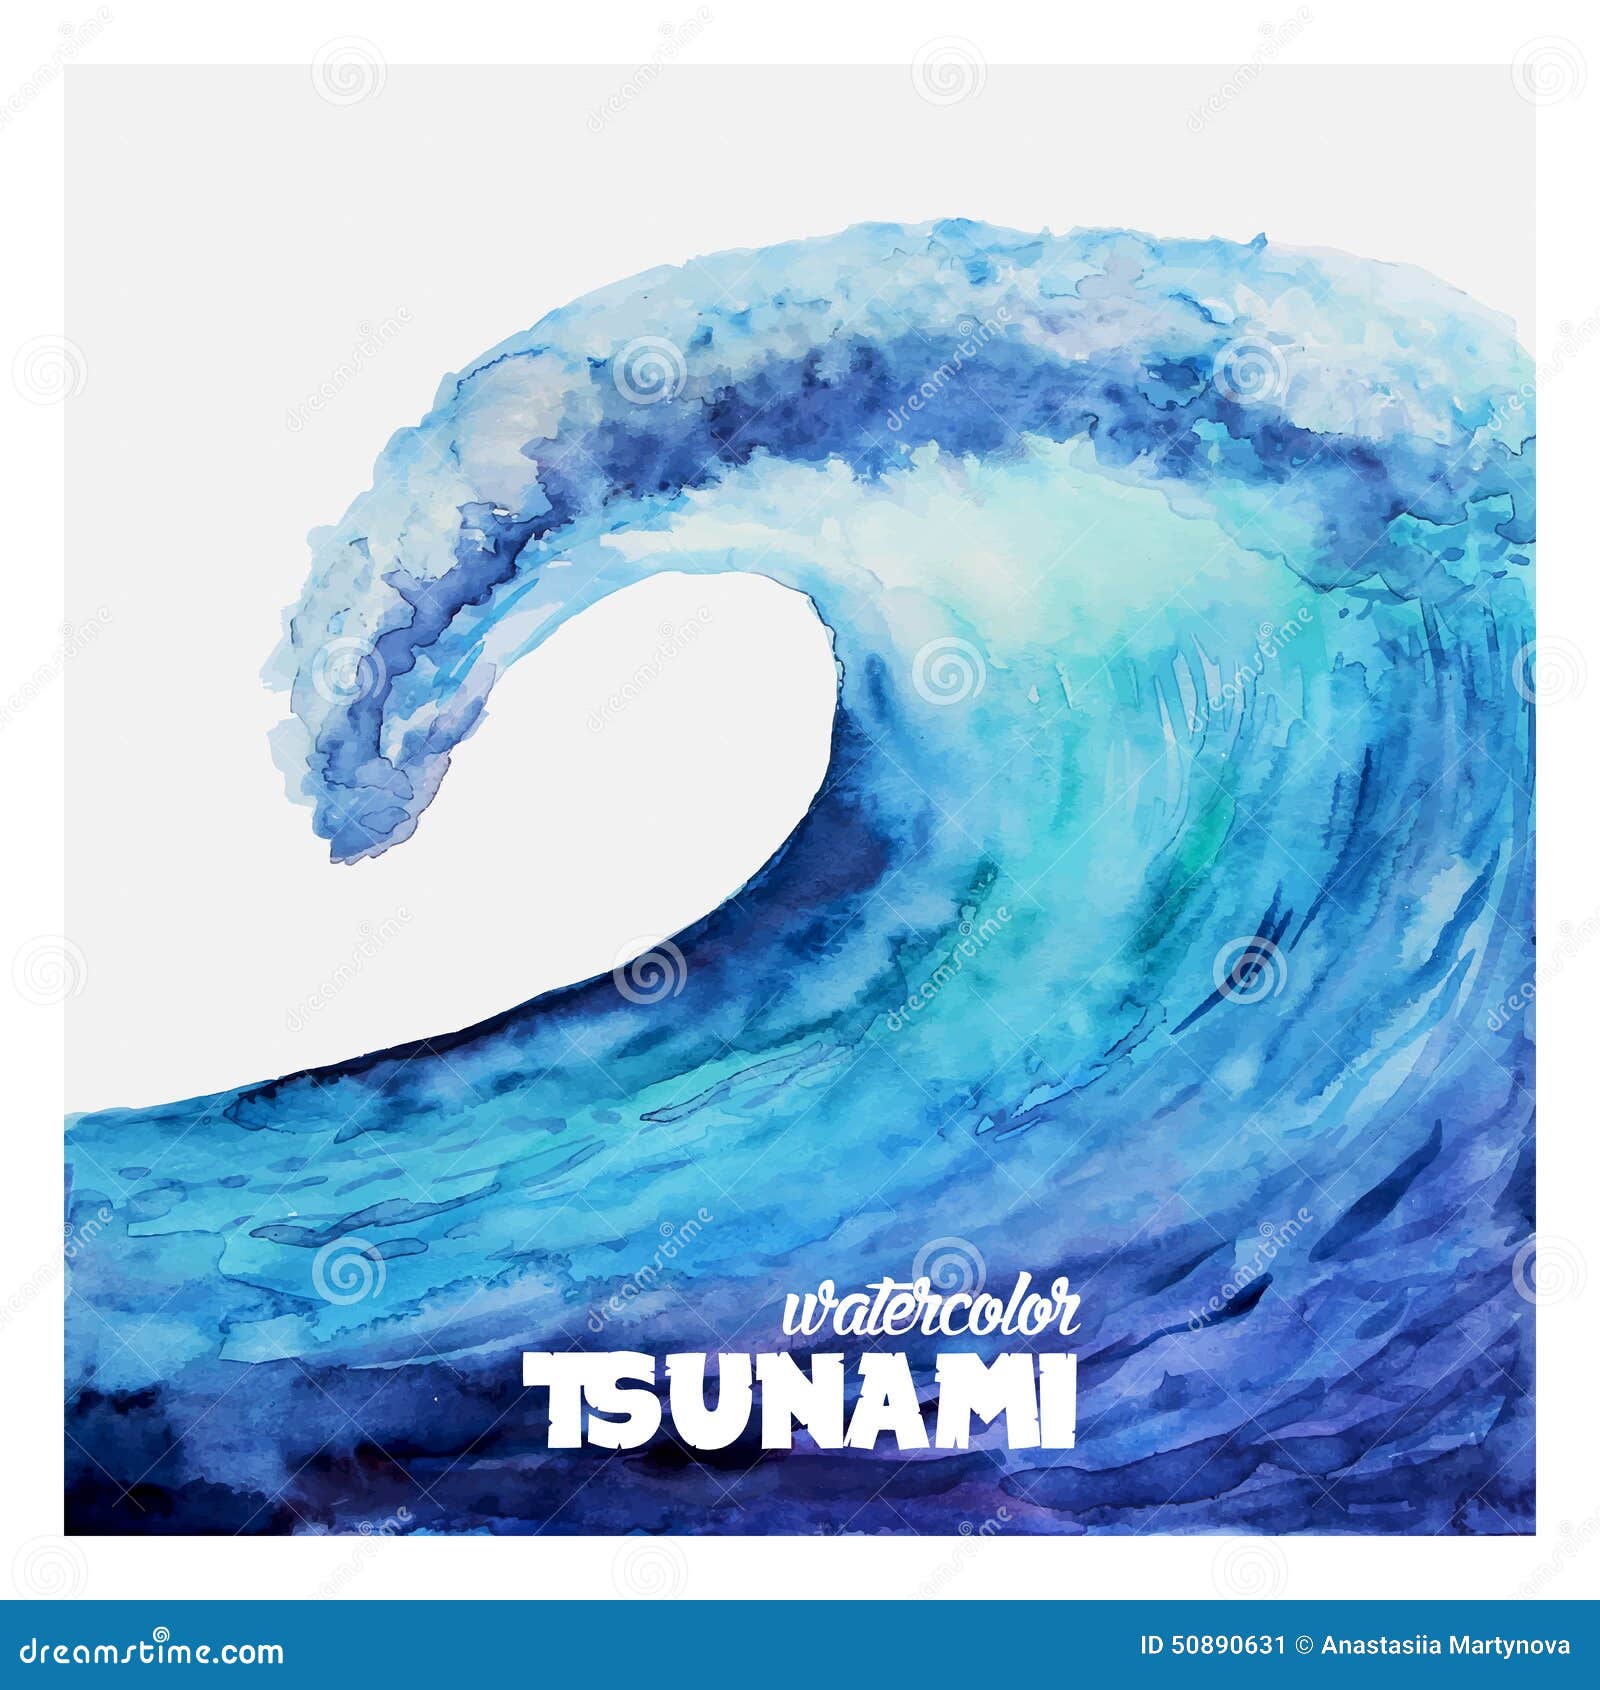 watercolor ocean tsunami waves